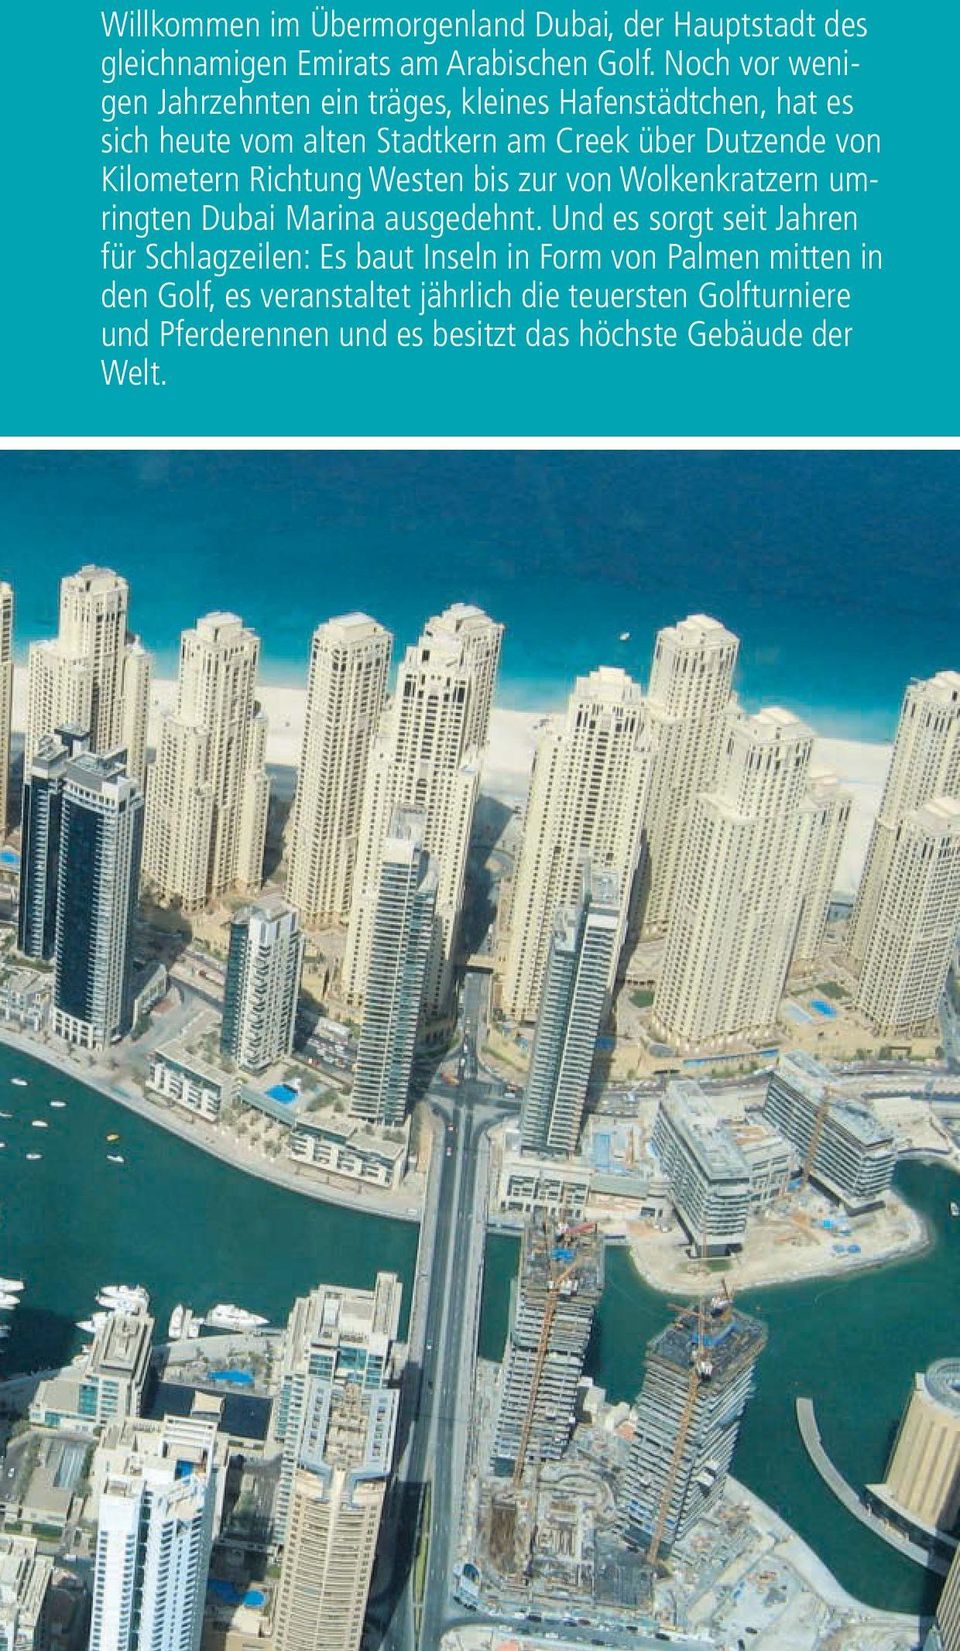 Kilometern Richtung Westen bis zur von Wolkenkratzern umringten Dubai Marina ausgedehnt.